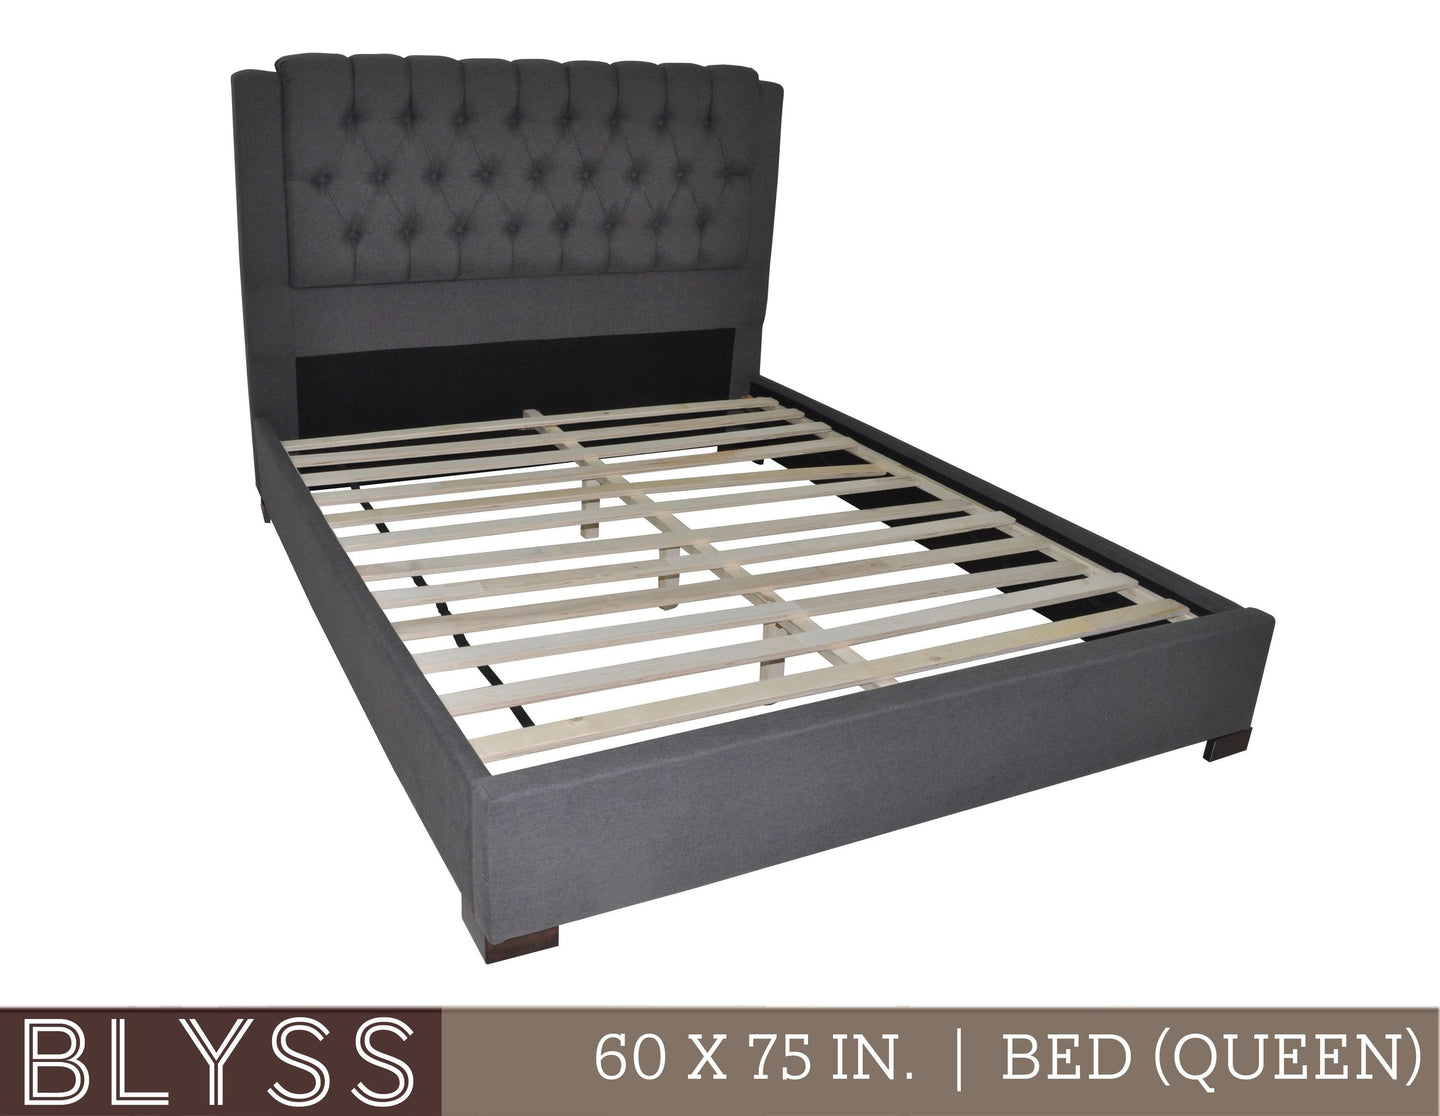 Blyss Bed (Queen Size)